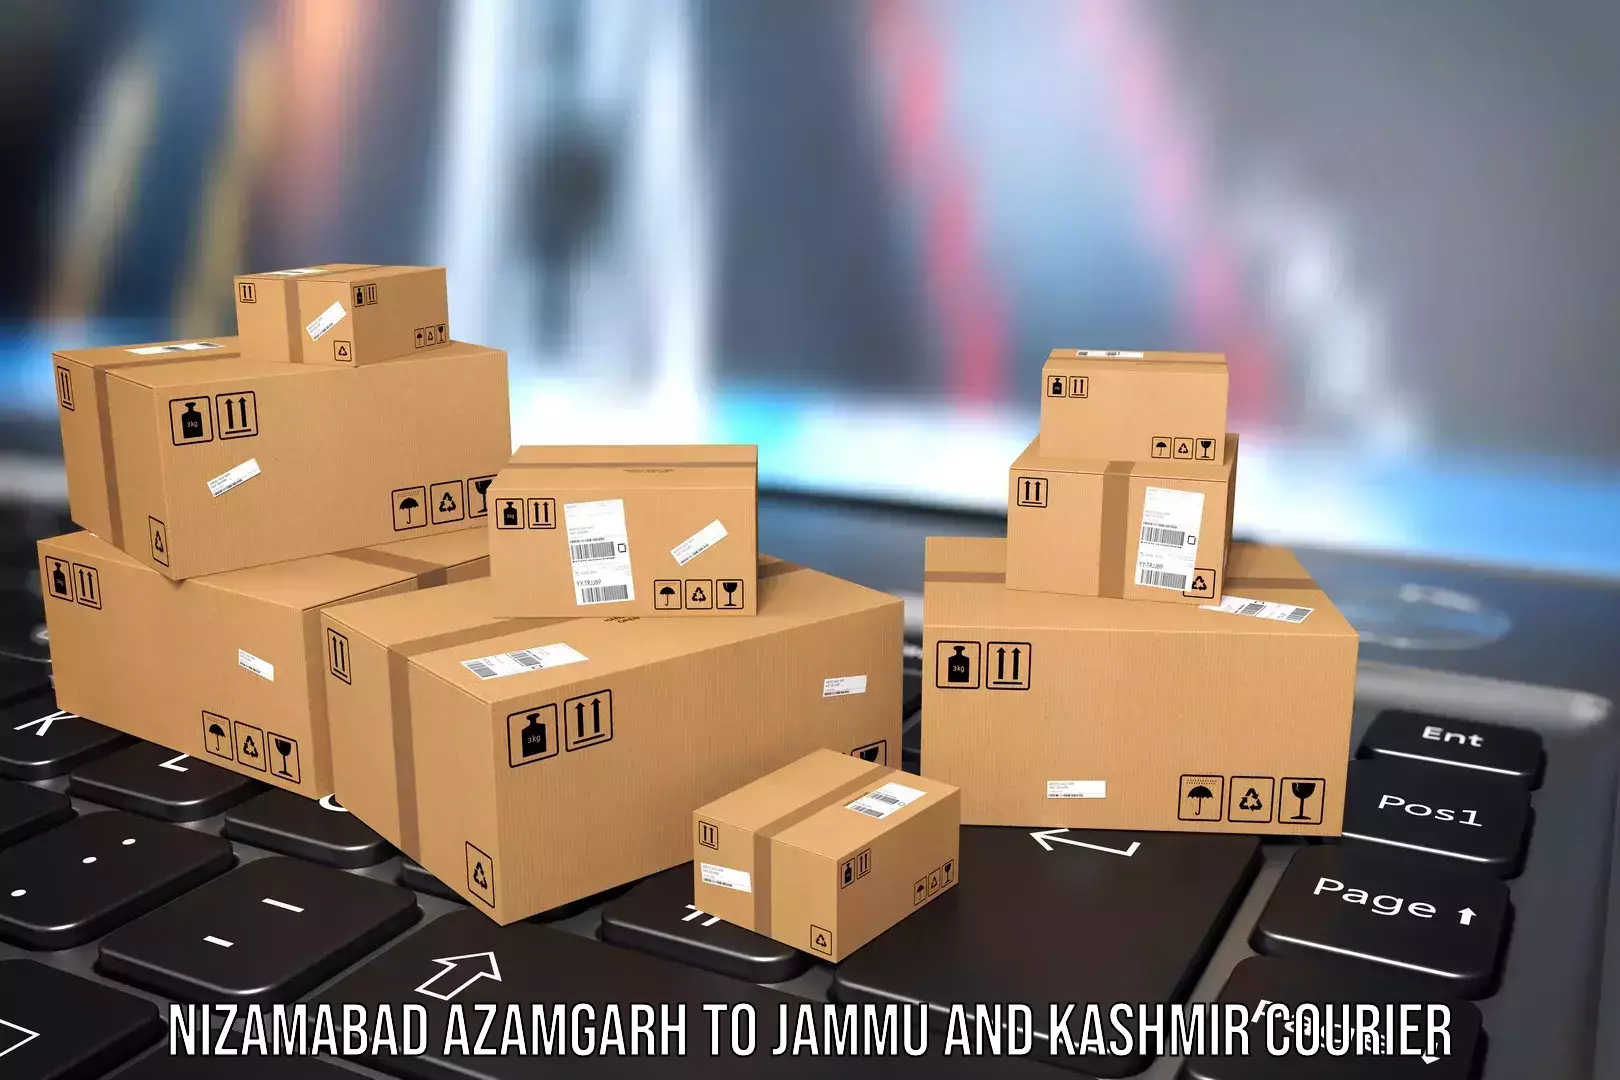 Luggage transport consultancy Nizamabad Azamgarh to University of Jammu